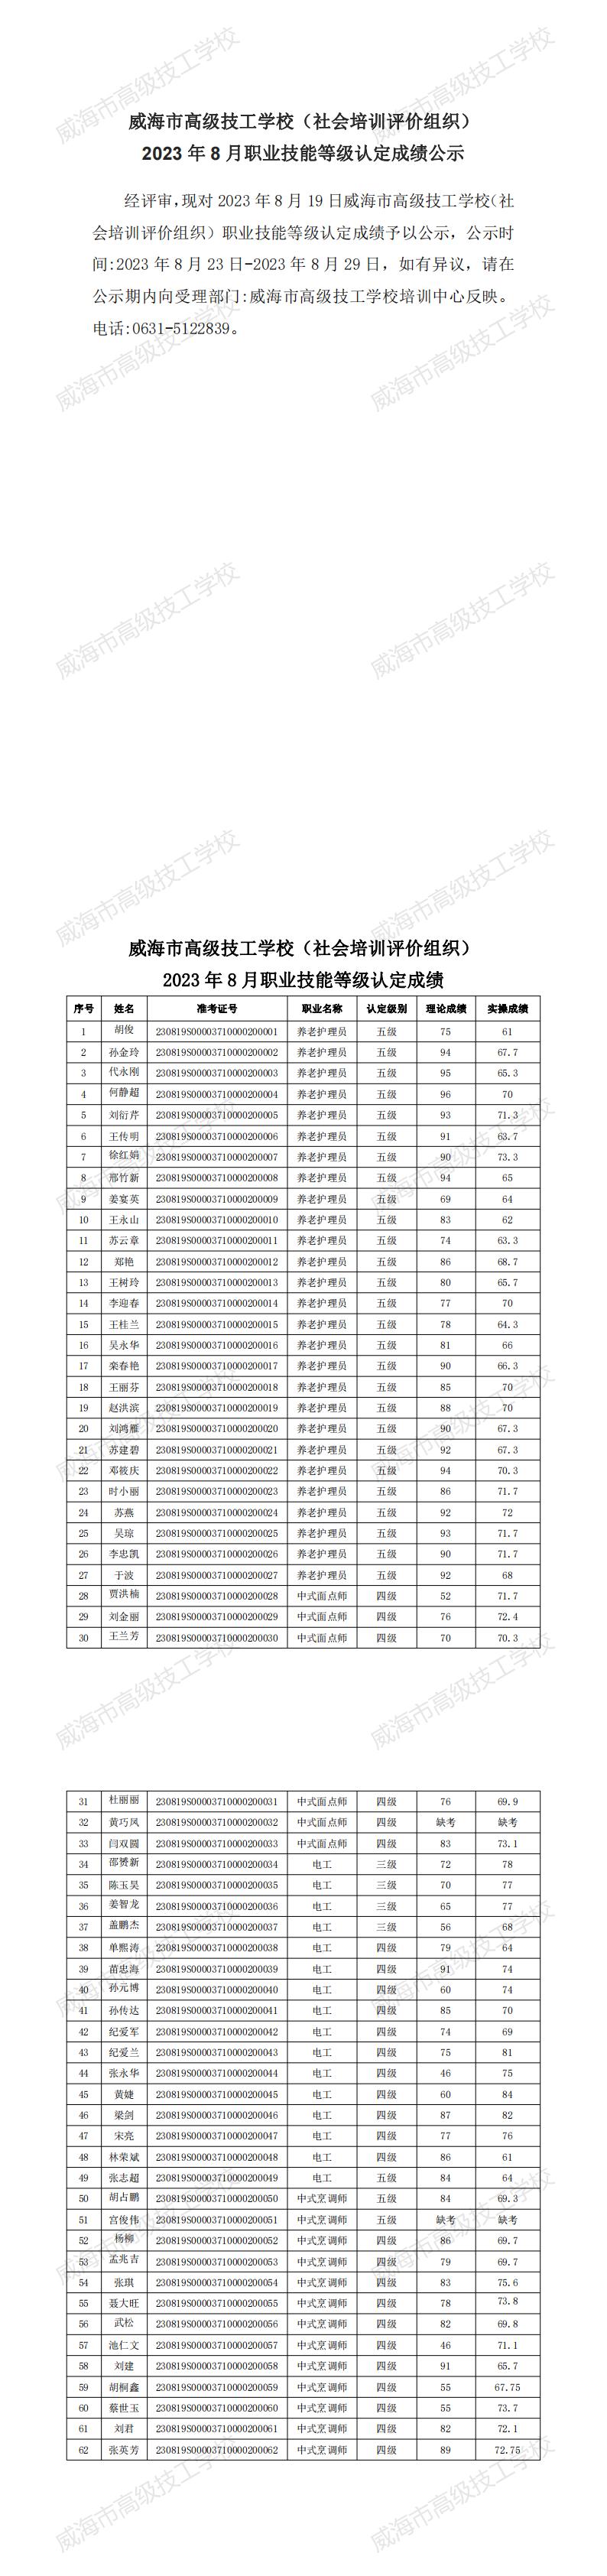  【公示】2023年8月职业技能等级认定成绩